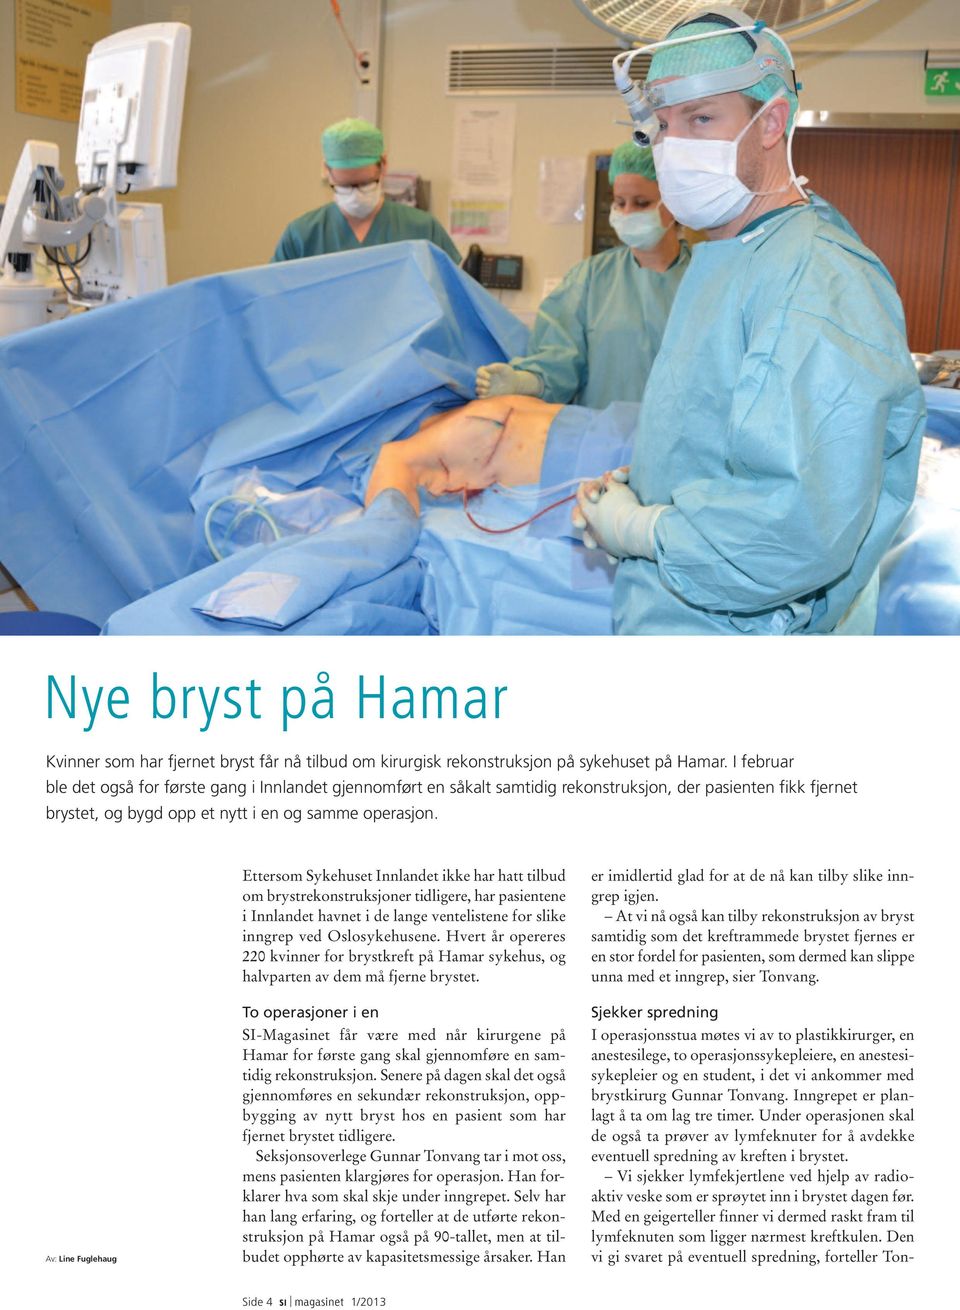 Ettersom Sykehuset Innlandet ikke har hatt tilbud om brystrekonstruksjoner tidligere, har pasientene i Innlandet havnet i de lange ventelistene for slike inngrep ved Oslosykehusene.